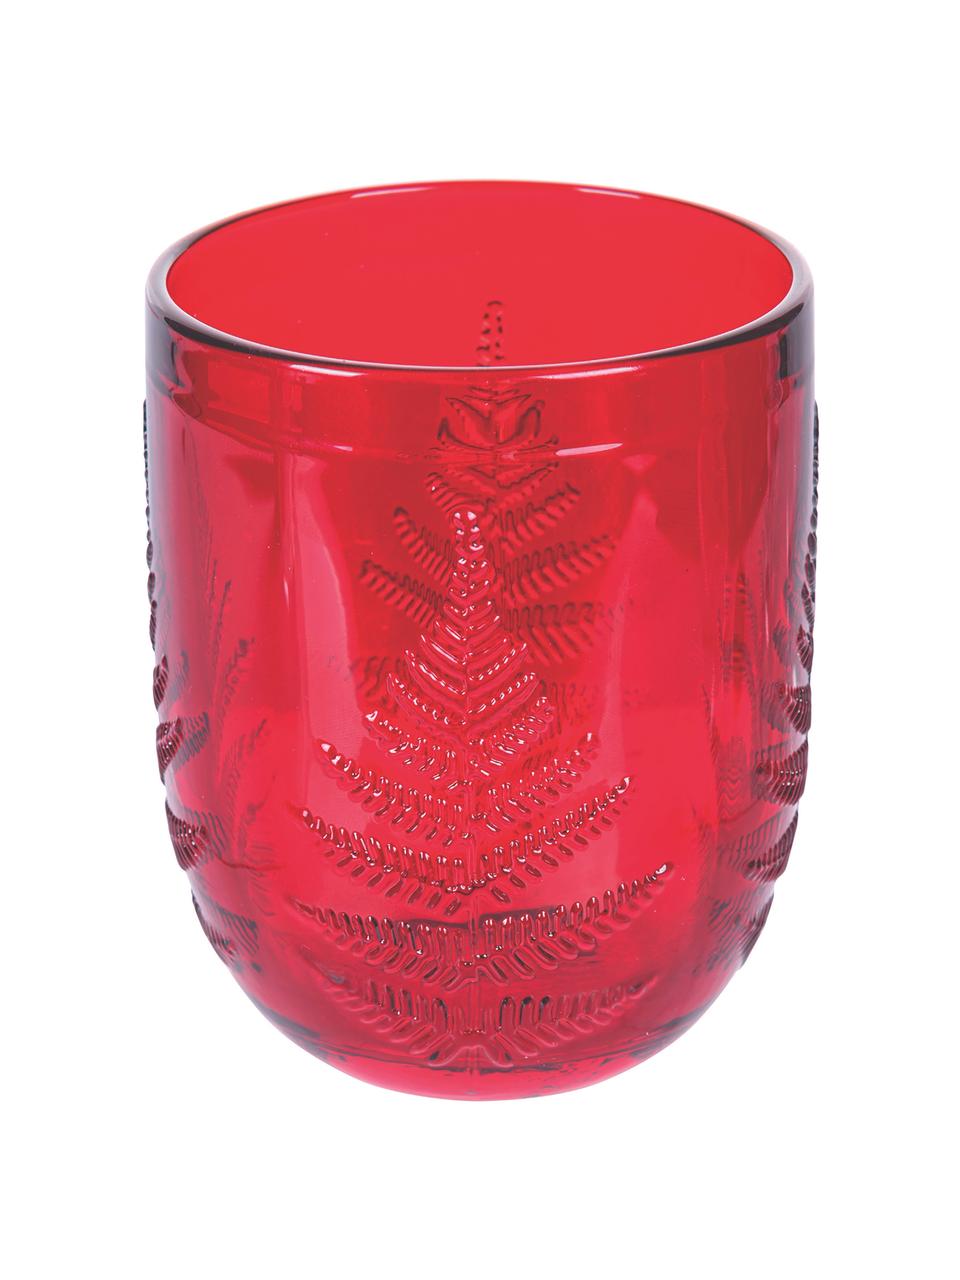 Wassergläser Aspen in Rot mit weihnachtlichem Strukturmuster, 6 Stück, Glas, Rot, Ø 8 x H 10 cm, 250 ml